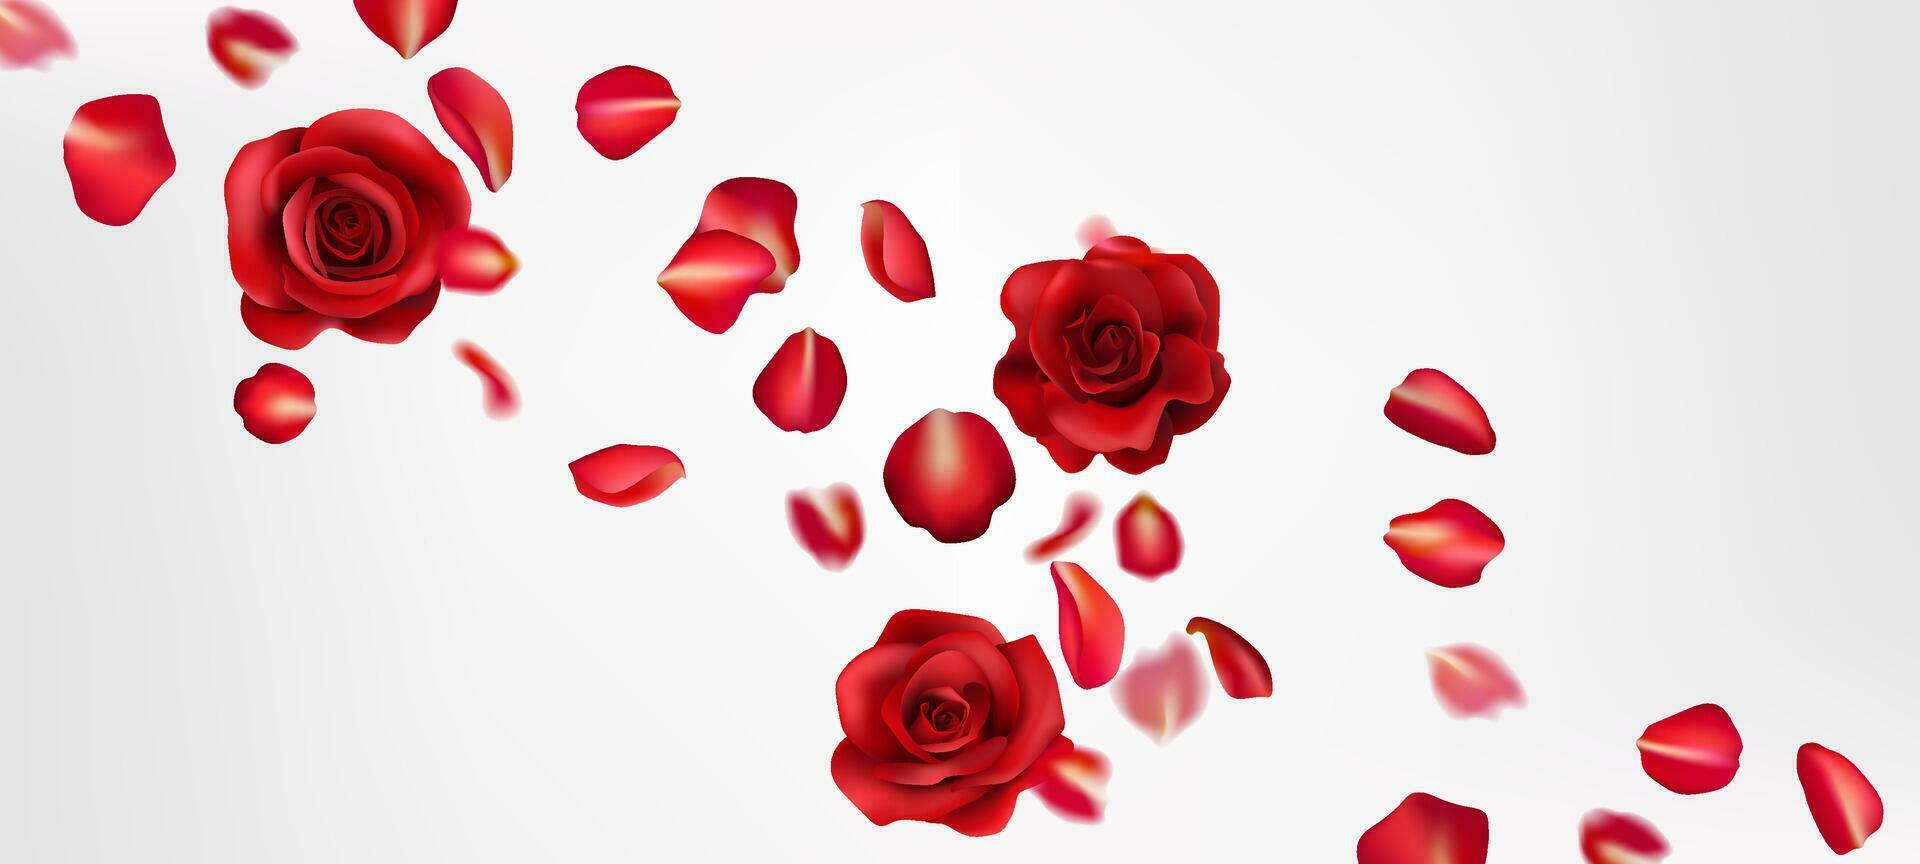 een romantisch rood roos realistisch illustratie, met vliegend bloemblaadjes. perfect voor Valentijnsdag dag, bruiloften, en feesten. realistisch details creëren een mooi, natuurlijk ontwerp. niet ai. vector